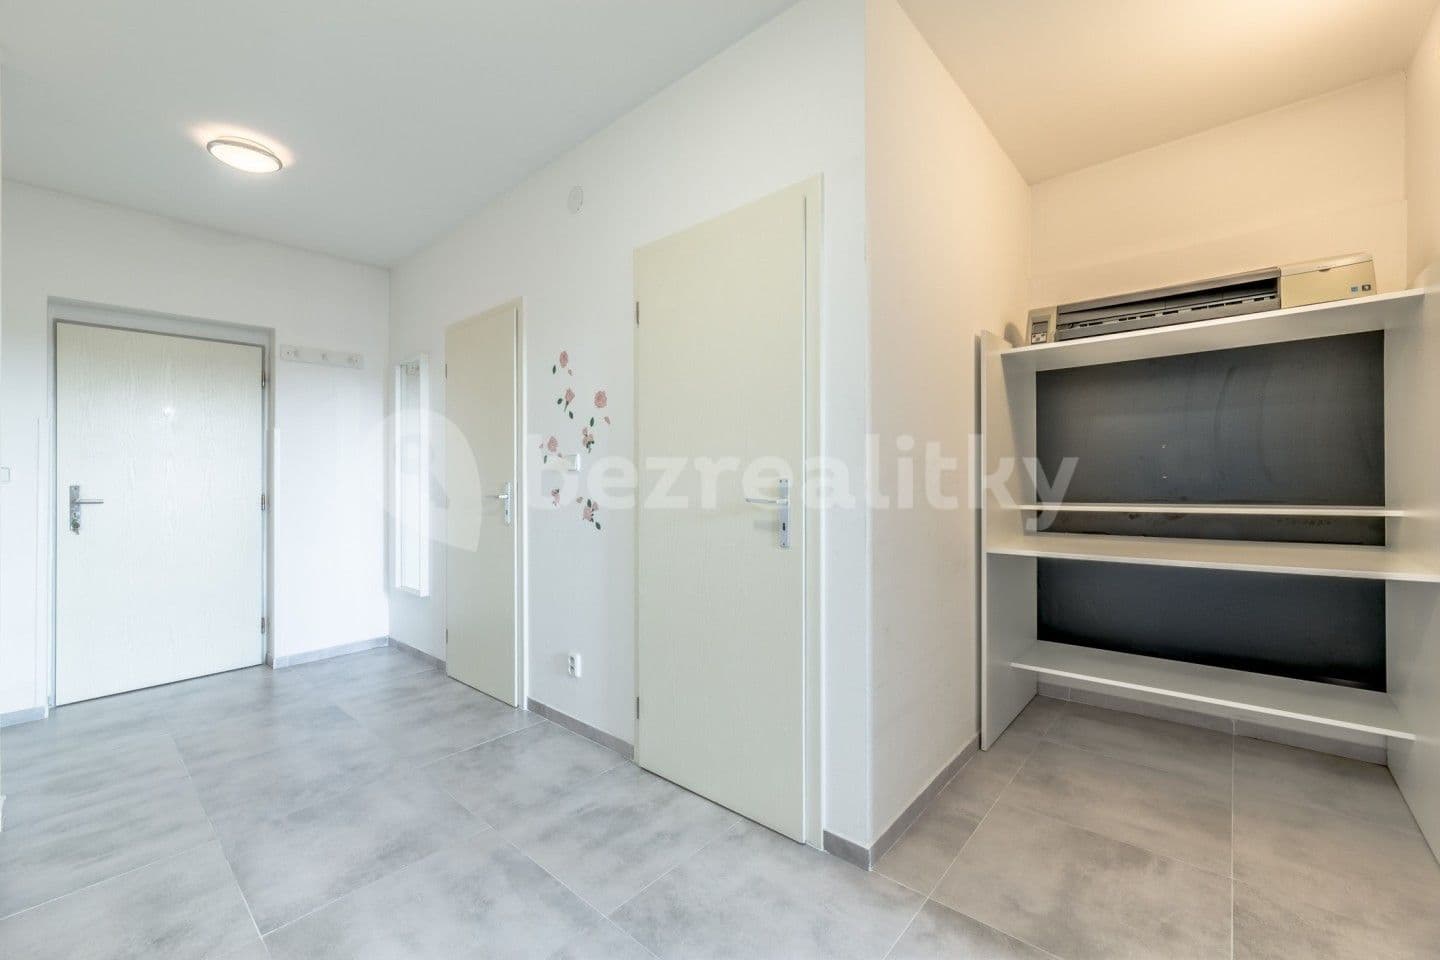 1 bedroom with open-plan kitchen flat for sale, 62 m², Českobrodská, Prague, Prague